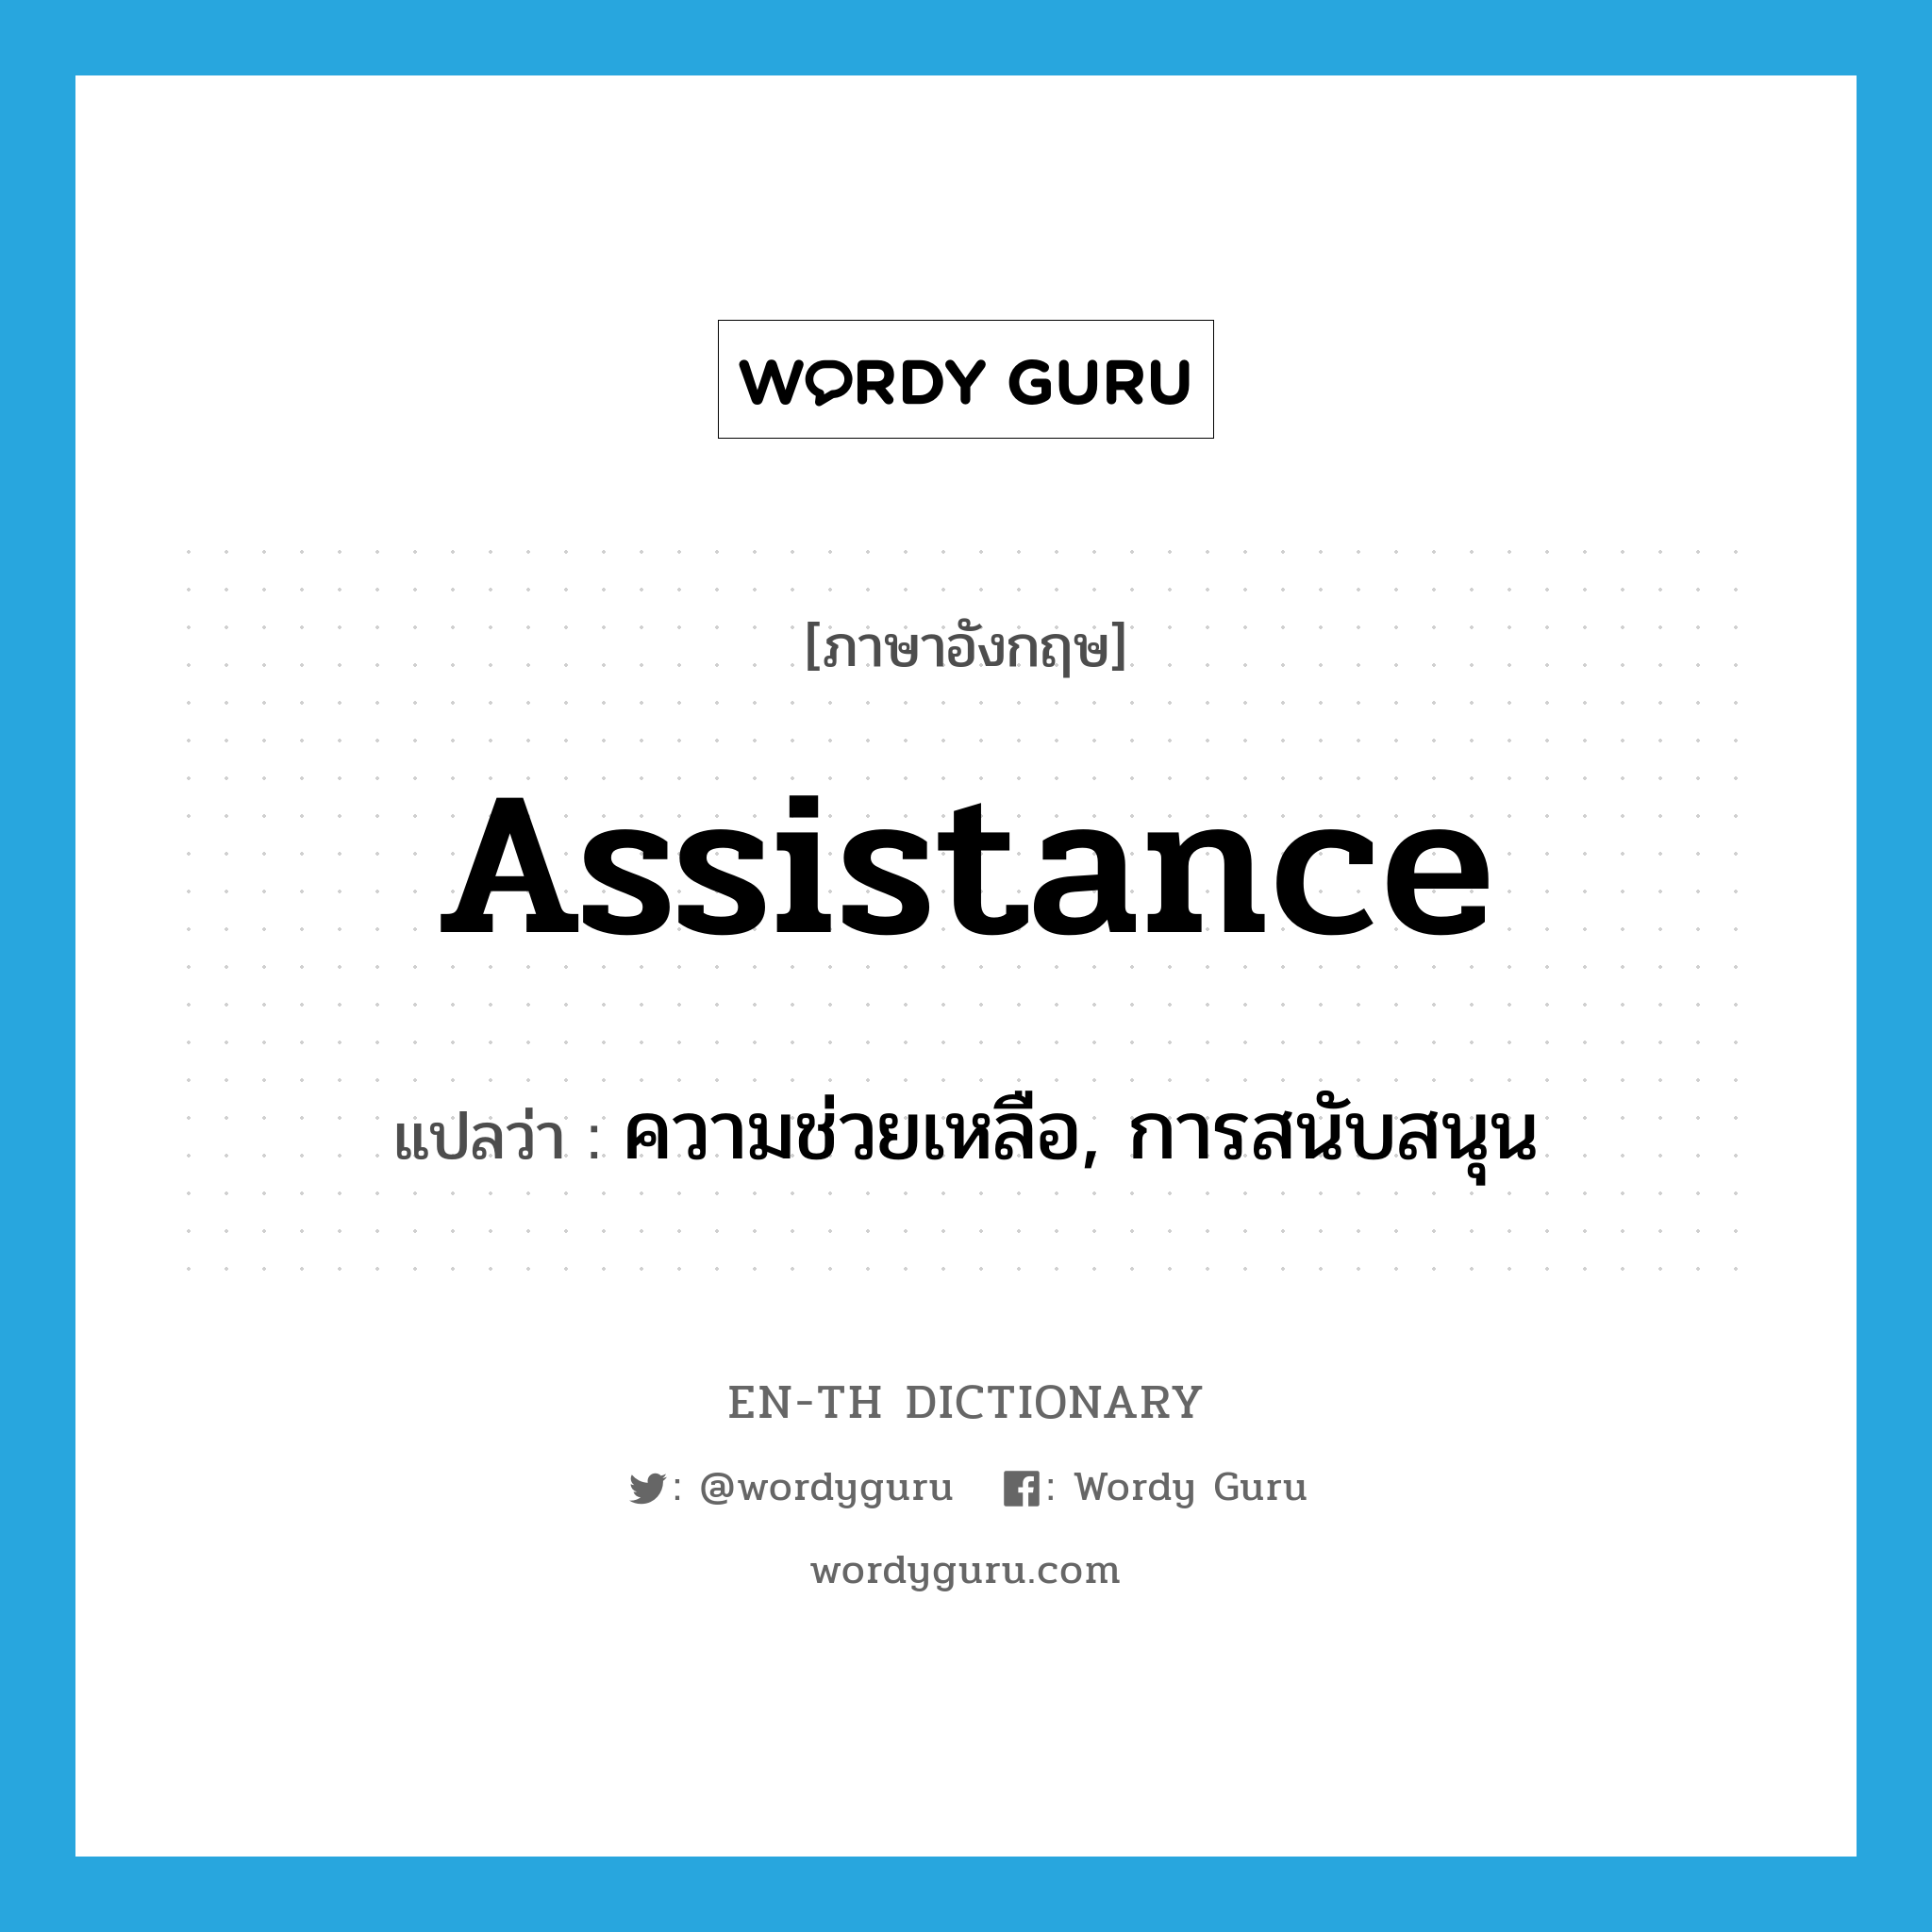 ความช่วยเหลือ, การสนับสนุน ภาษาอังกฤษ?, คำศัพท์ภาษาอังกฤษ ความช่วยเหลือ, การสนับสนุน แปลว่า assistance ประเภท N หมวด N